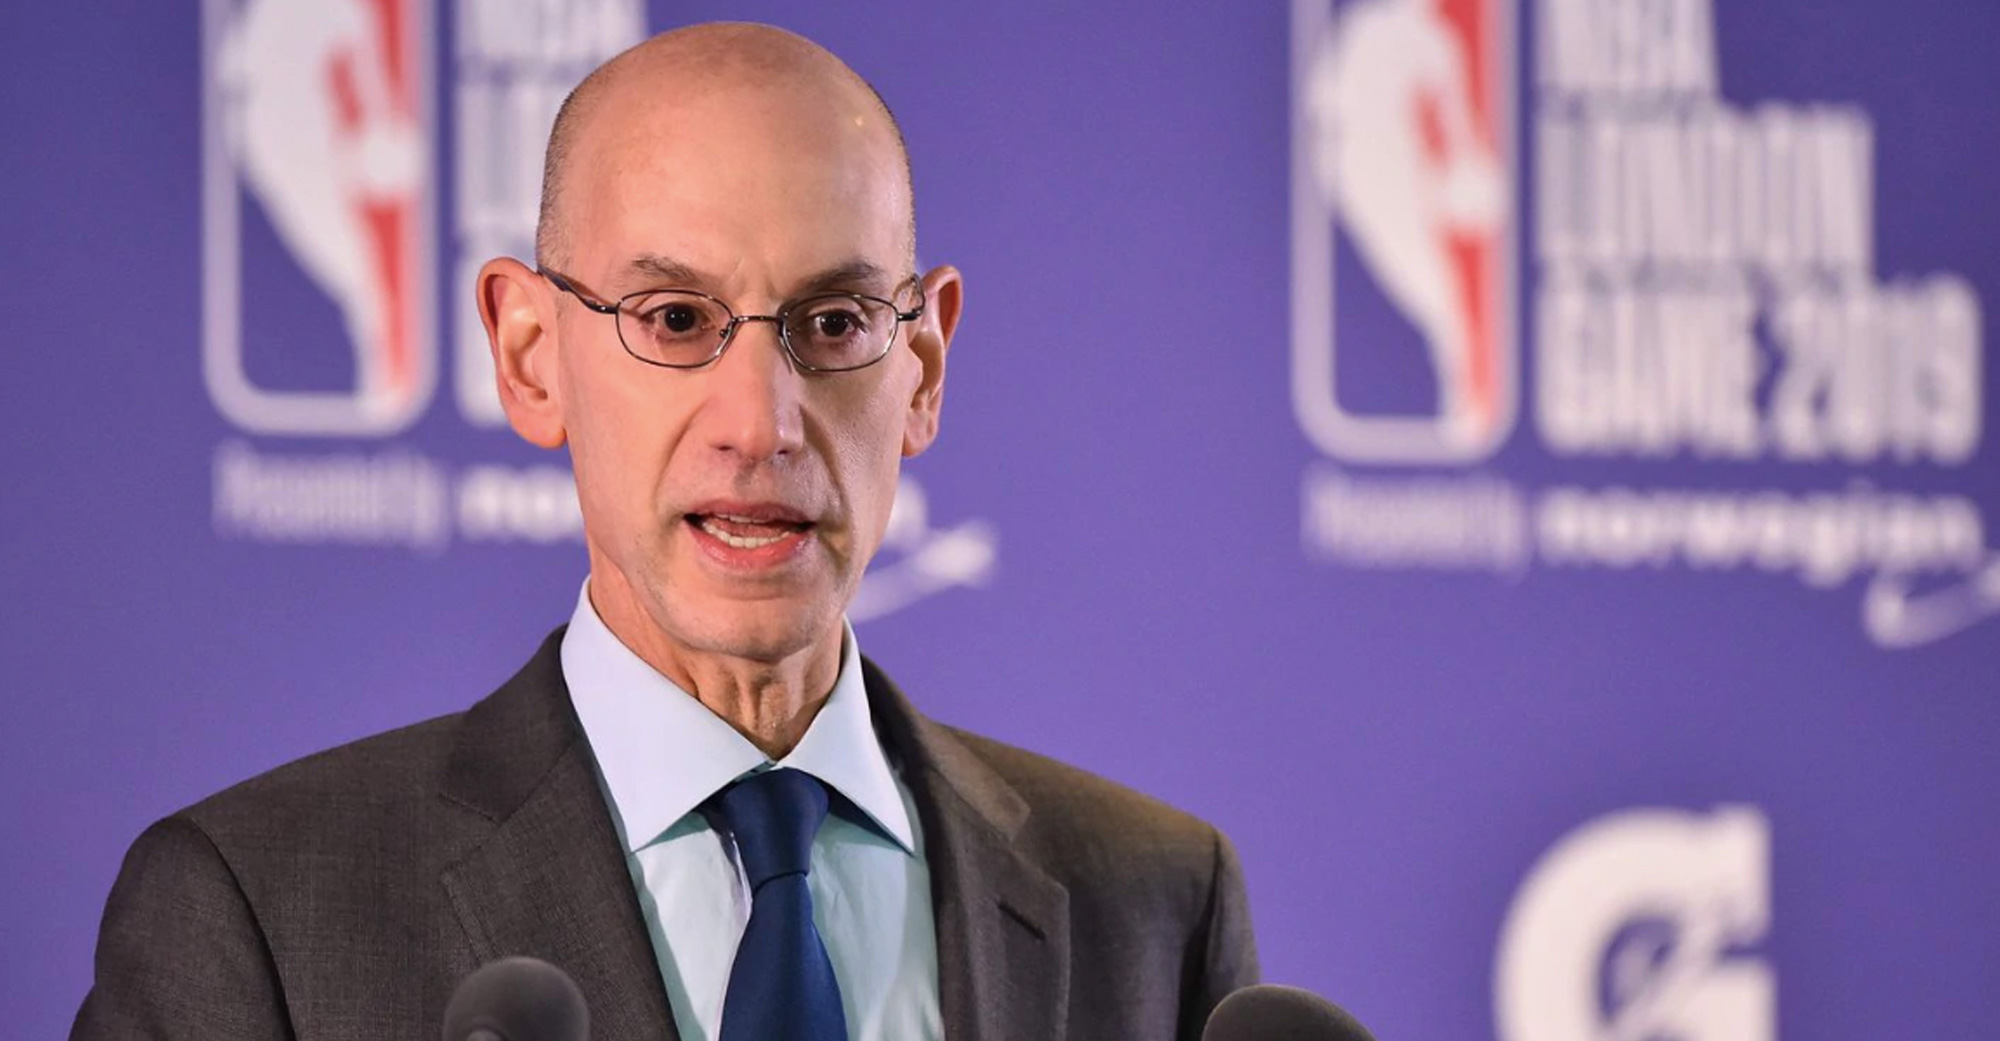 NBA’s China Business Under Threat Following a Sensitive Tweet